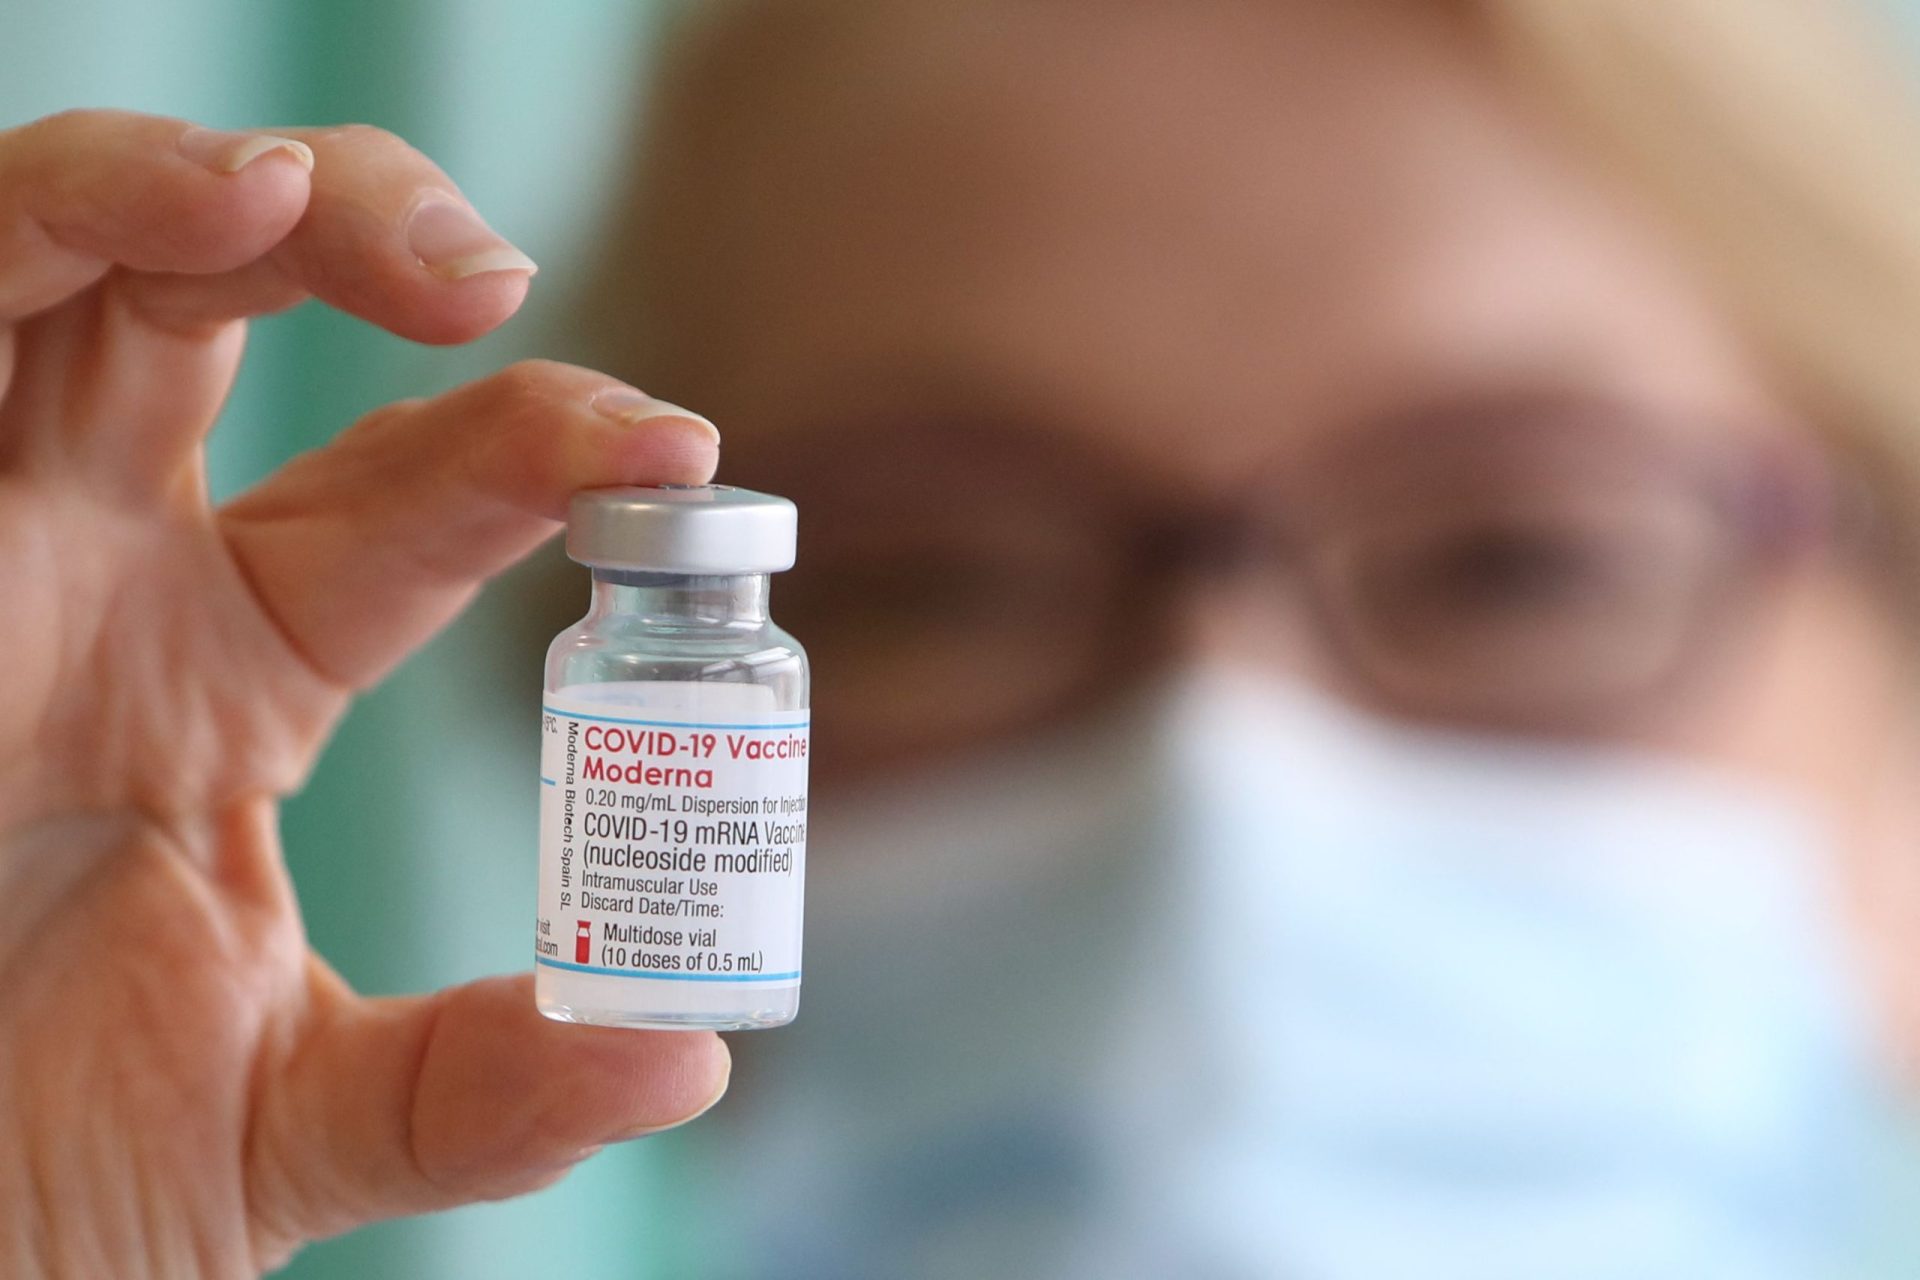 Venda da vacina contra a covid-19 rendeu 1.700 milhões de dólares à Moderna